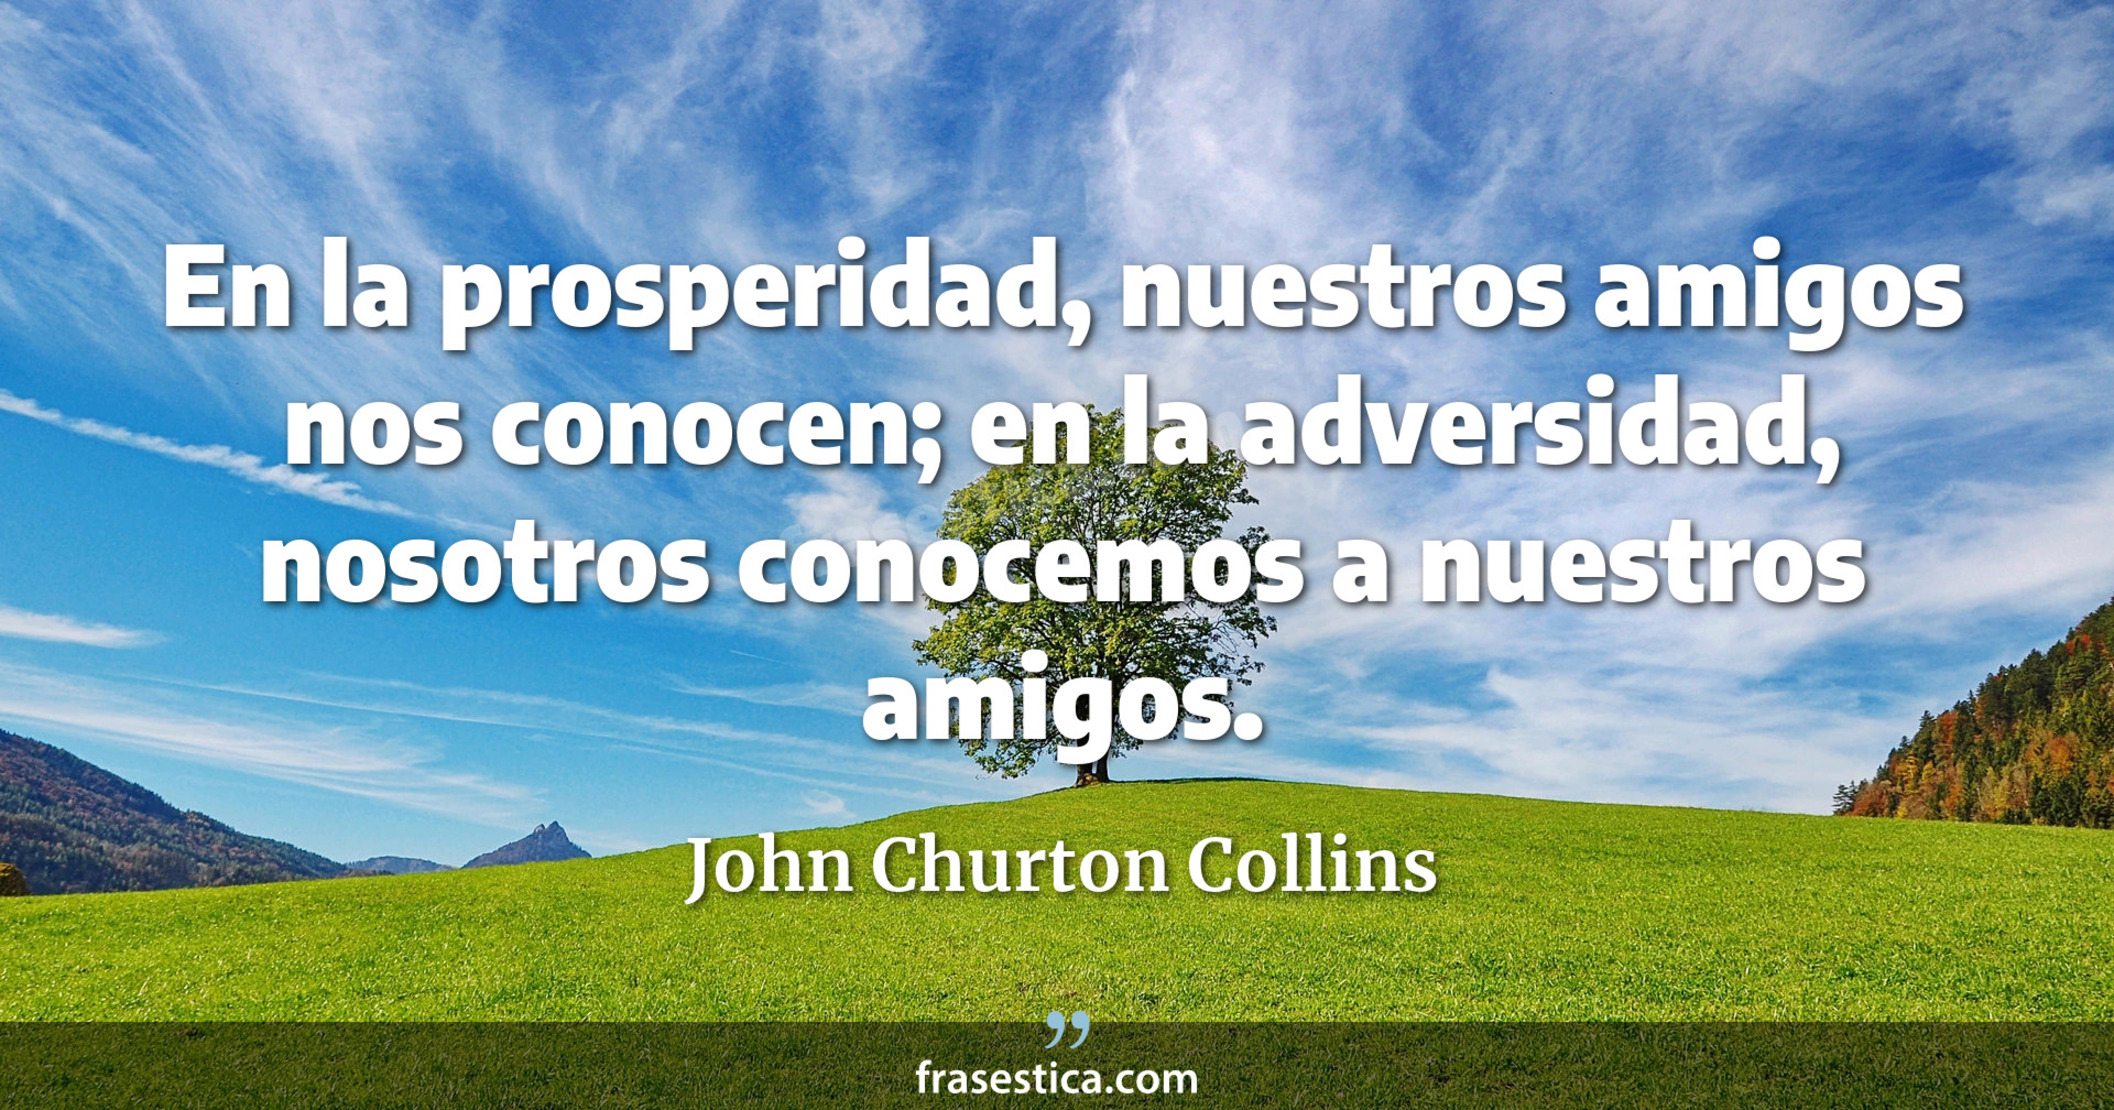 En la prosperidad, nuestros amigos nos conocen; en la adversidad, nosotros conocemos a nuestros amigos. - John Churton Collins